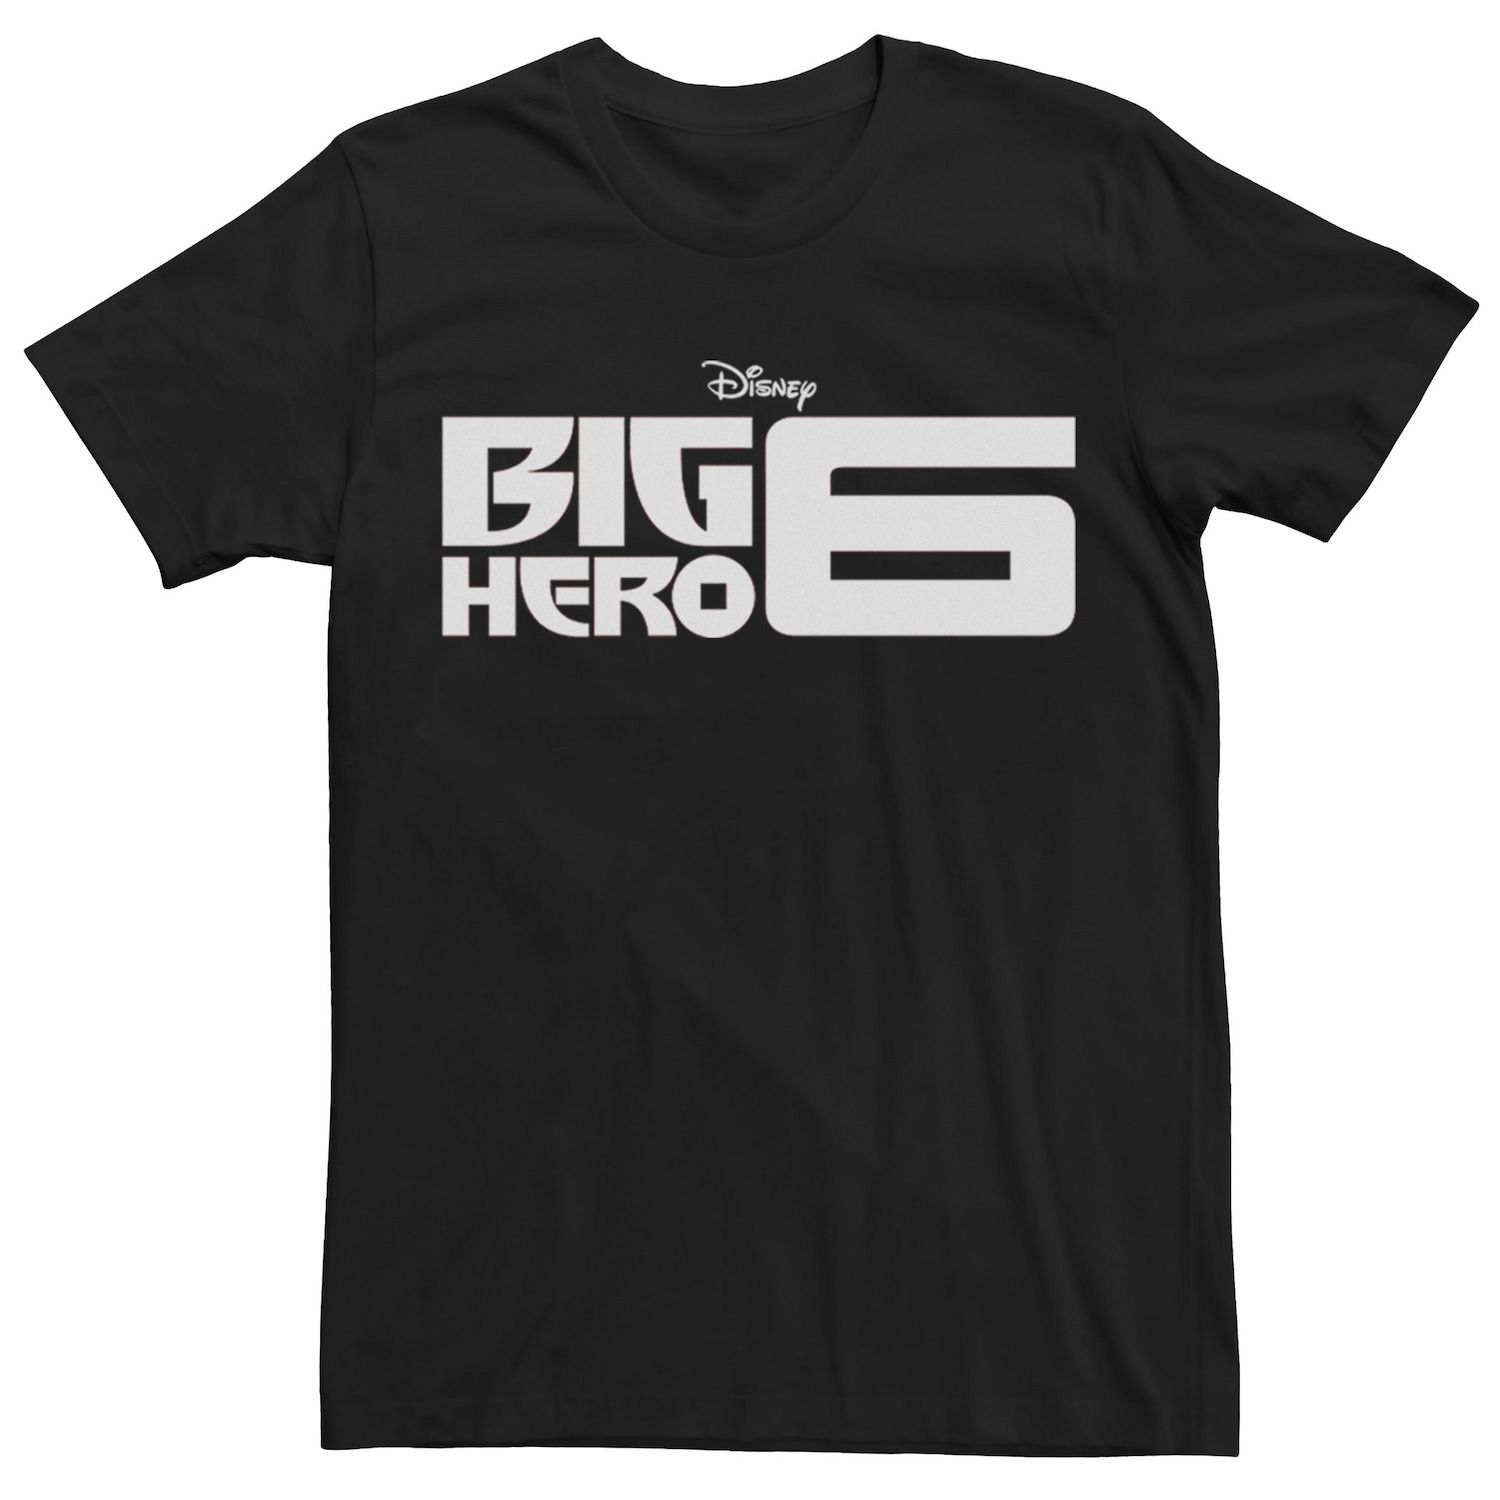 Мужская футболка с большим логотипом Big Hero 6 Disney